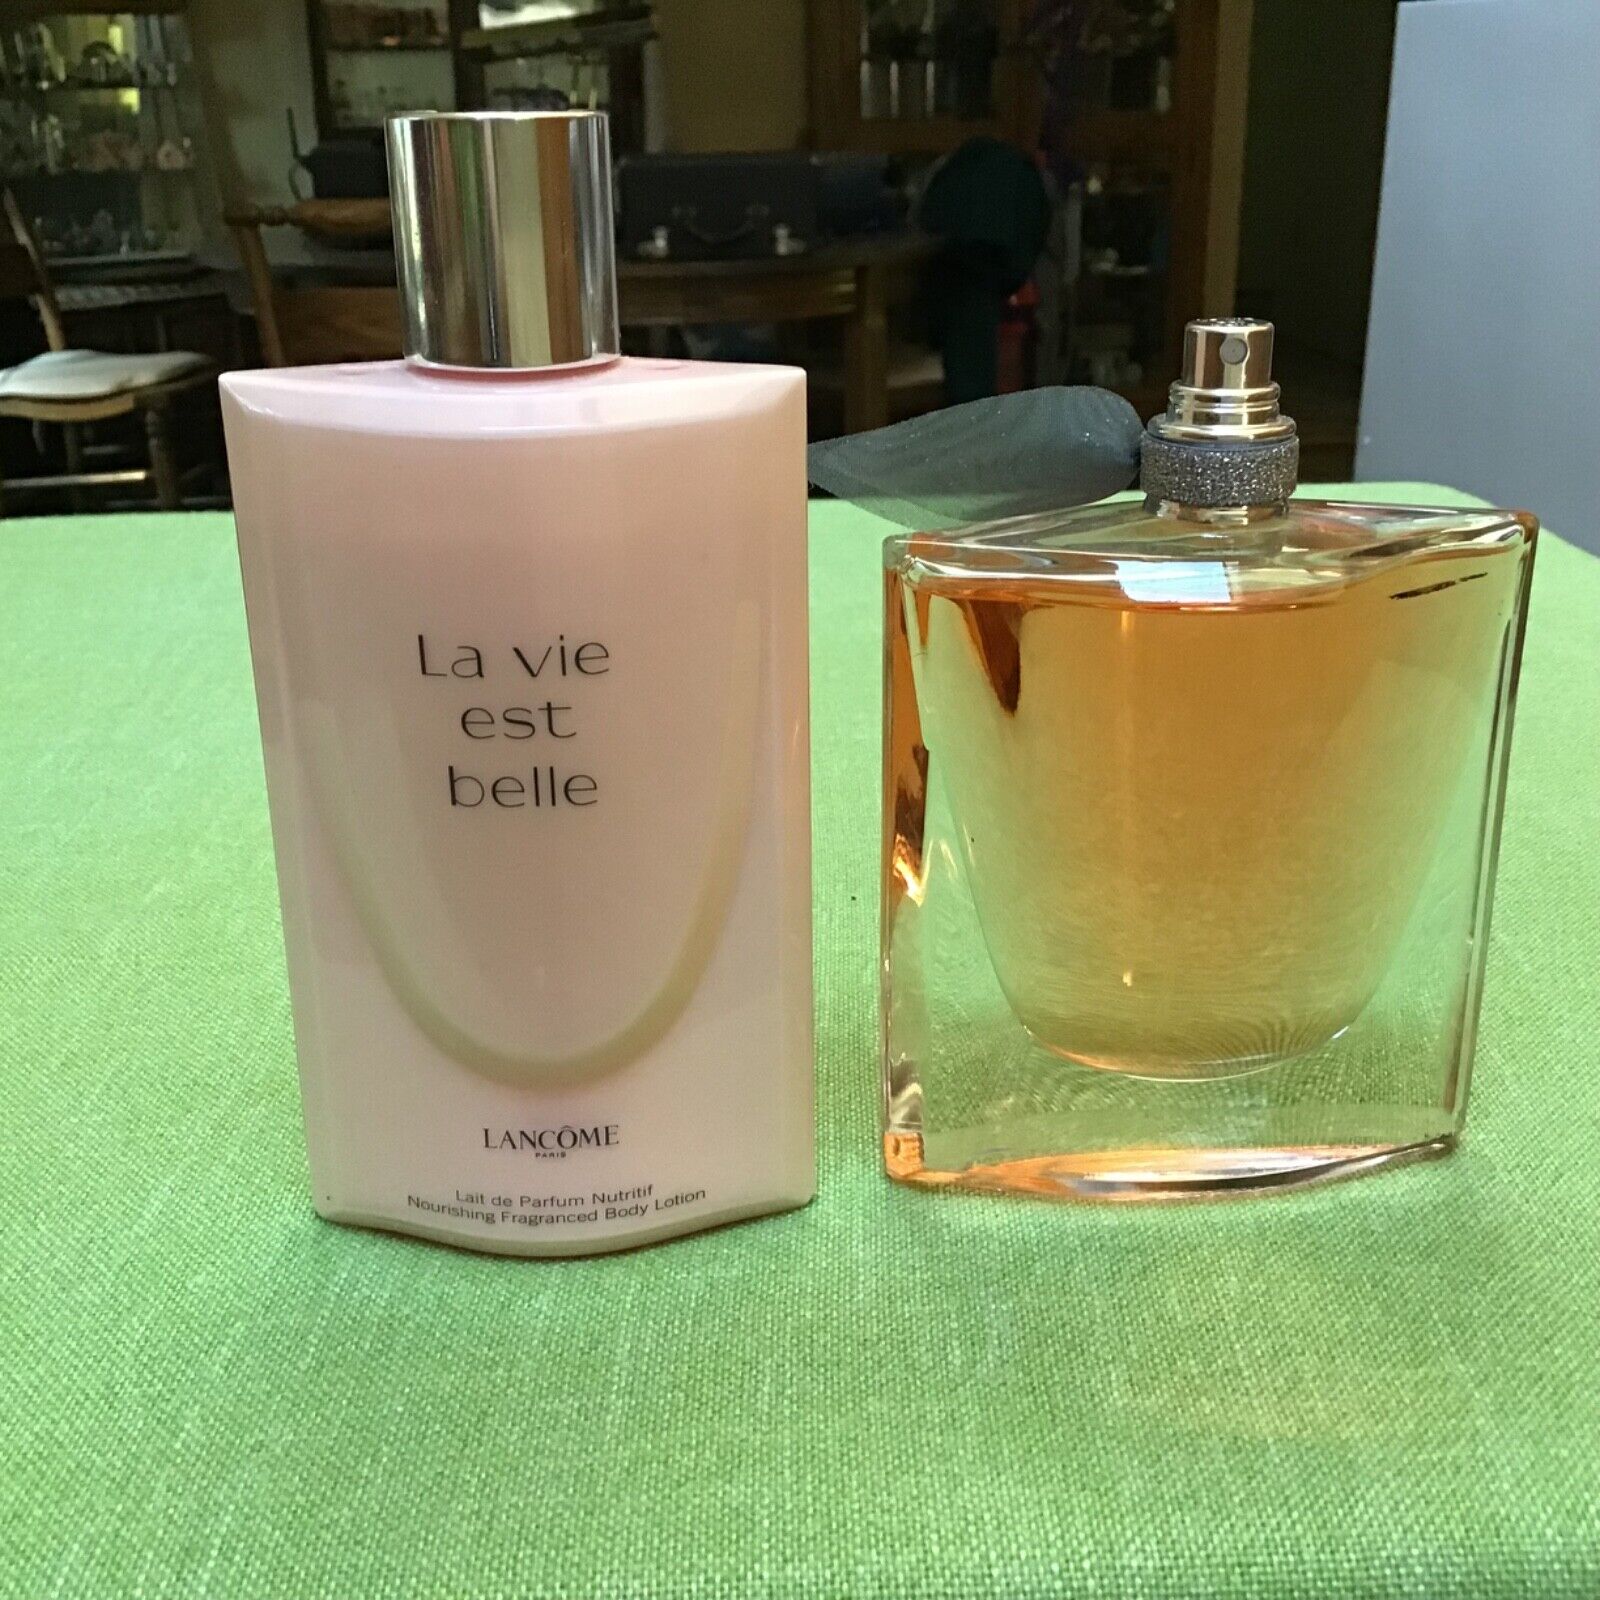 Lancôme, “ La vie est belle” Eau de Parfum and Body Lotion